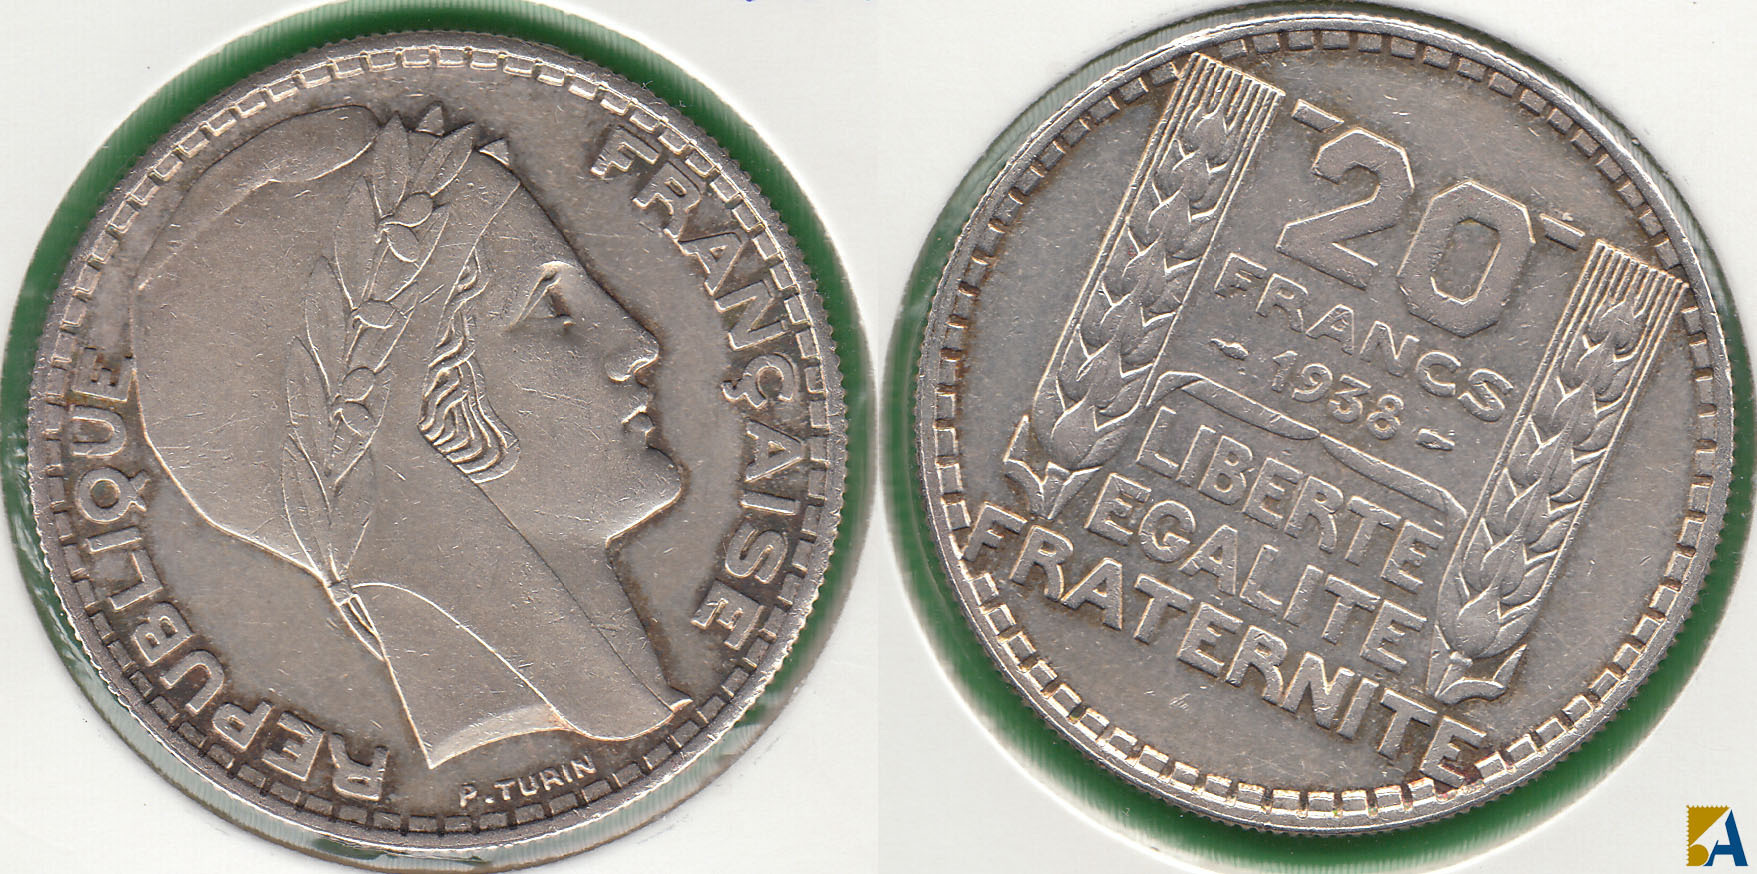 FRANCIA - FRANCE. 20 FRANCOS (FRANCS) DE 1938. PLATA 0.680.